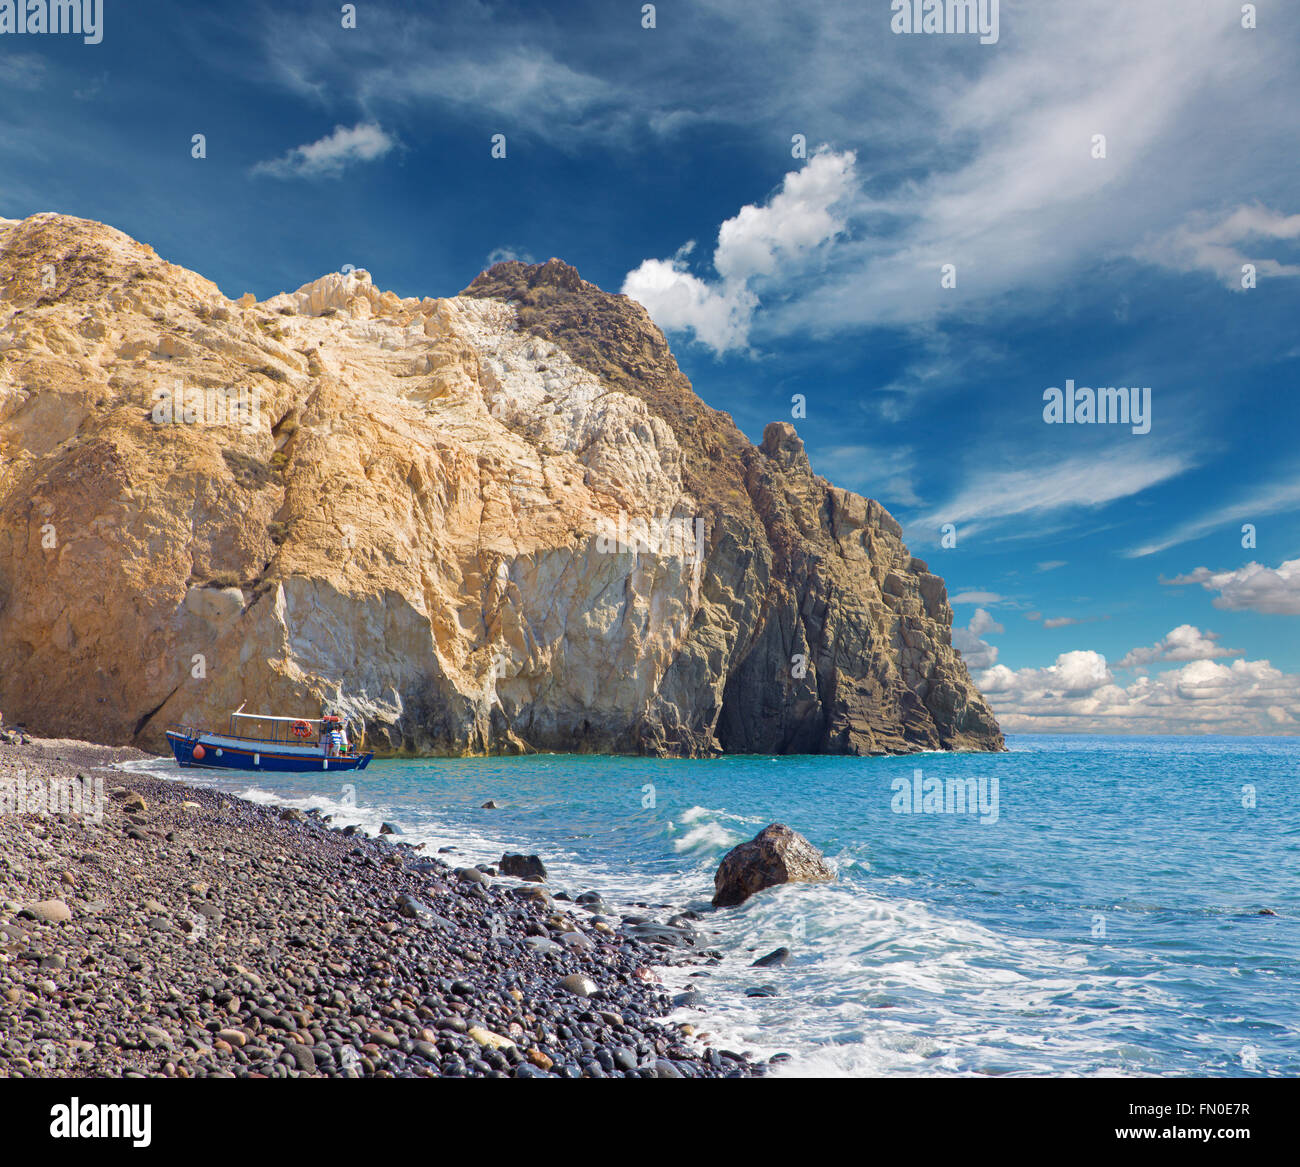 SANTORINI, Grecia - 7 ottobre 2015: la spiaggia nera dalla parte sud dell'isola. Foto Stock